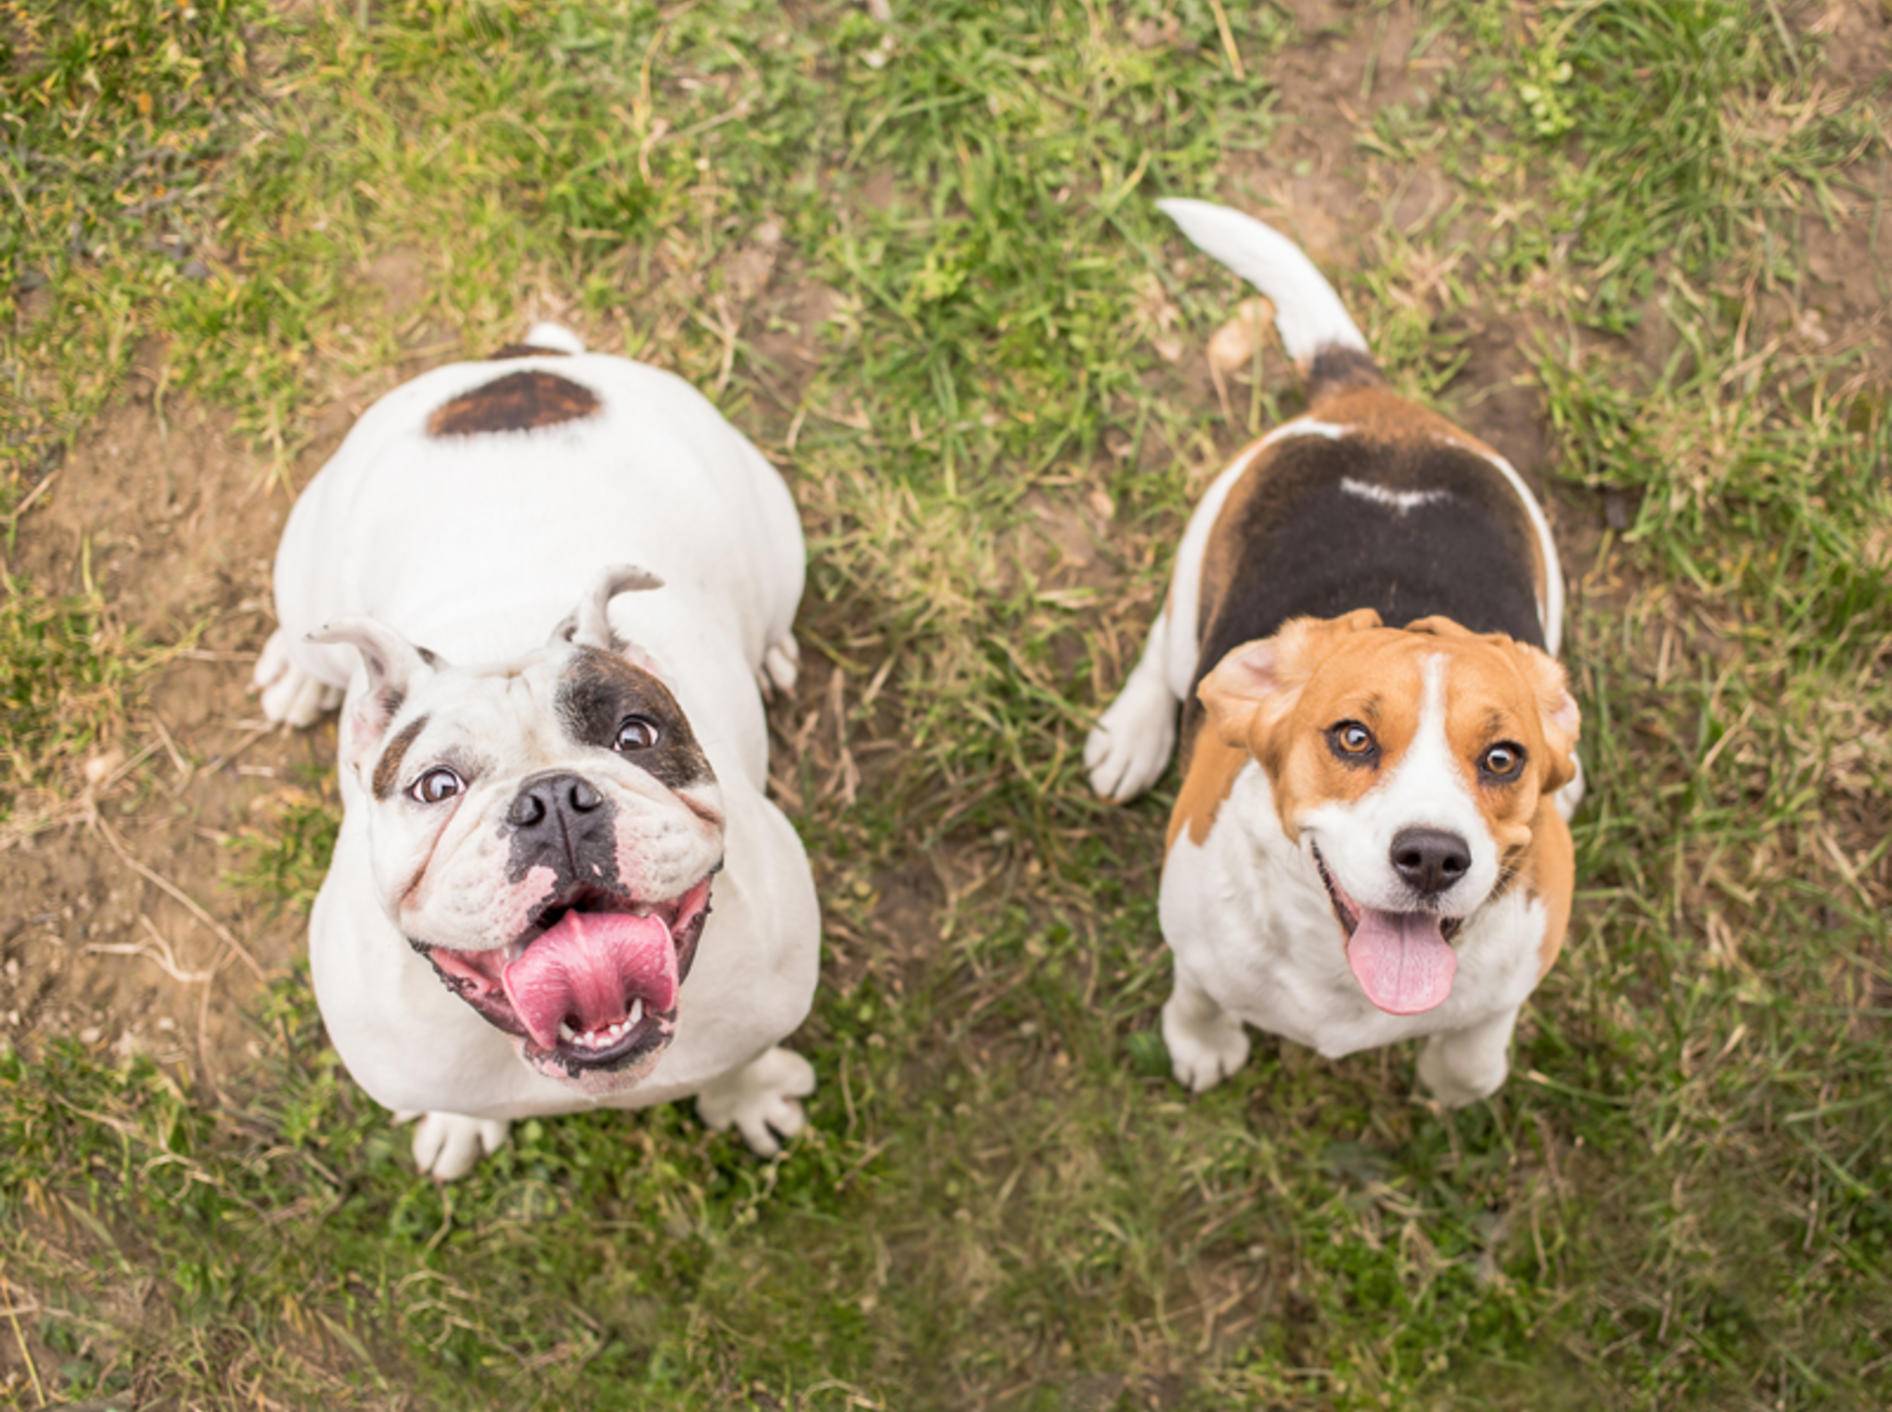 Die Englische Bulldogge und der Beagle warten auf ihre Belohnung. Ob sie wohl ein Lob oder ein Leckerli bevorzugen? – Shutterstock / Lunja